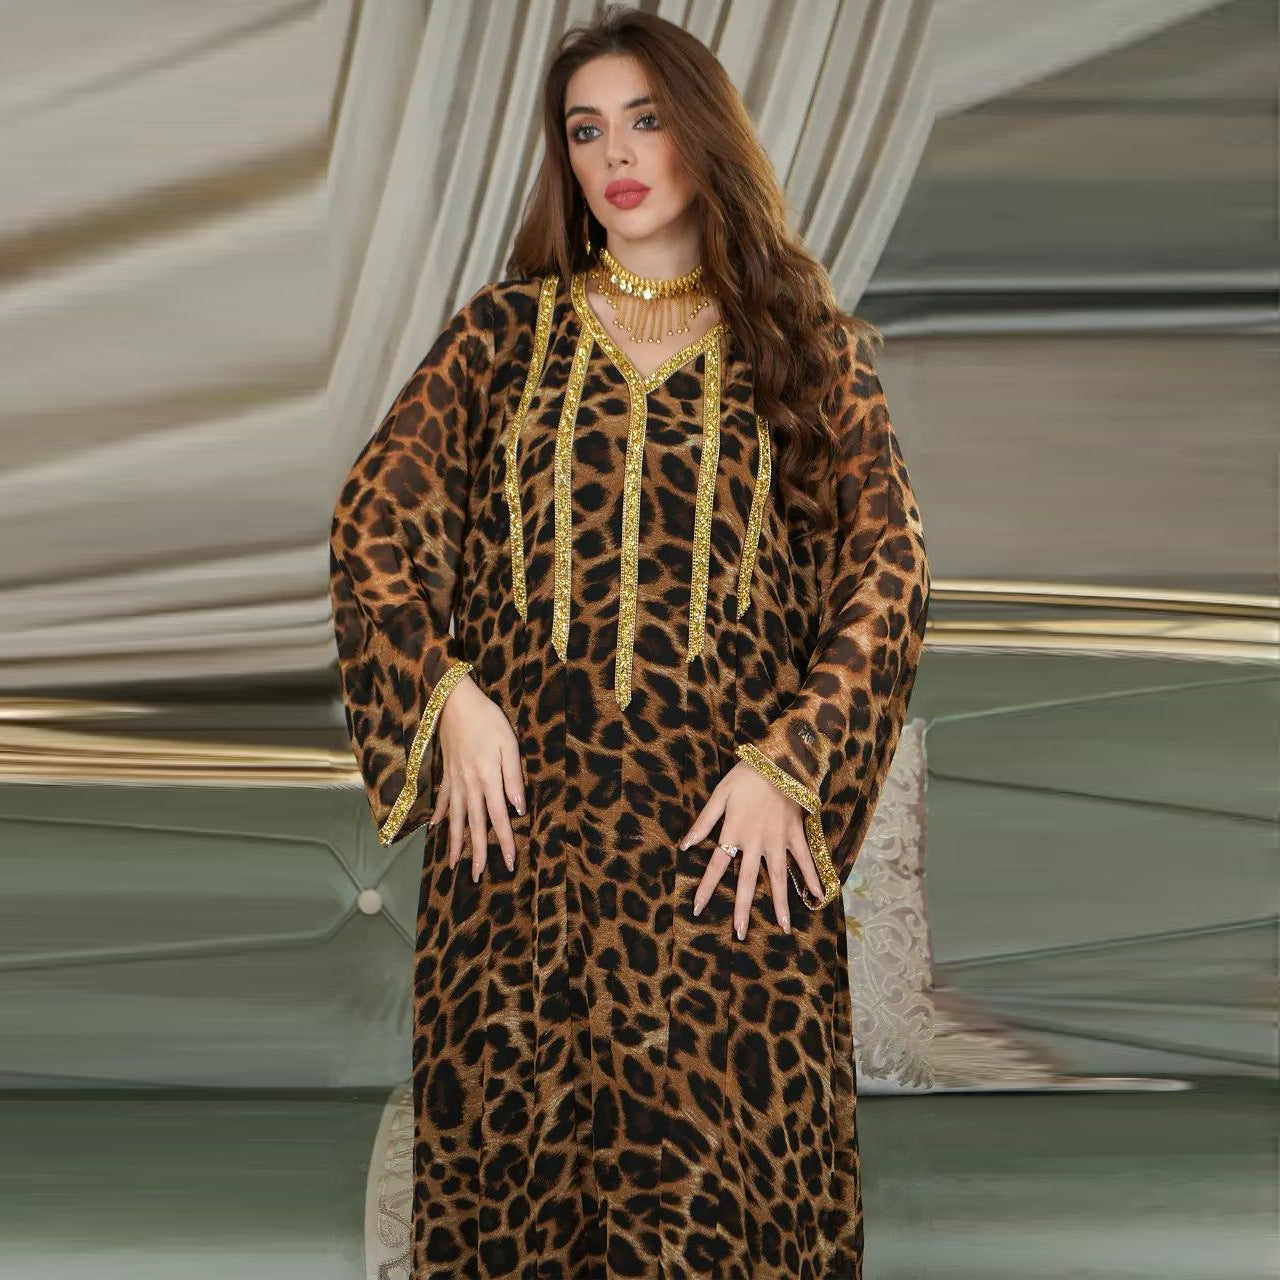 Leopard Print Brown Maxi Dress